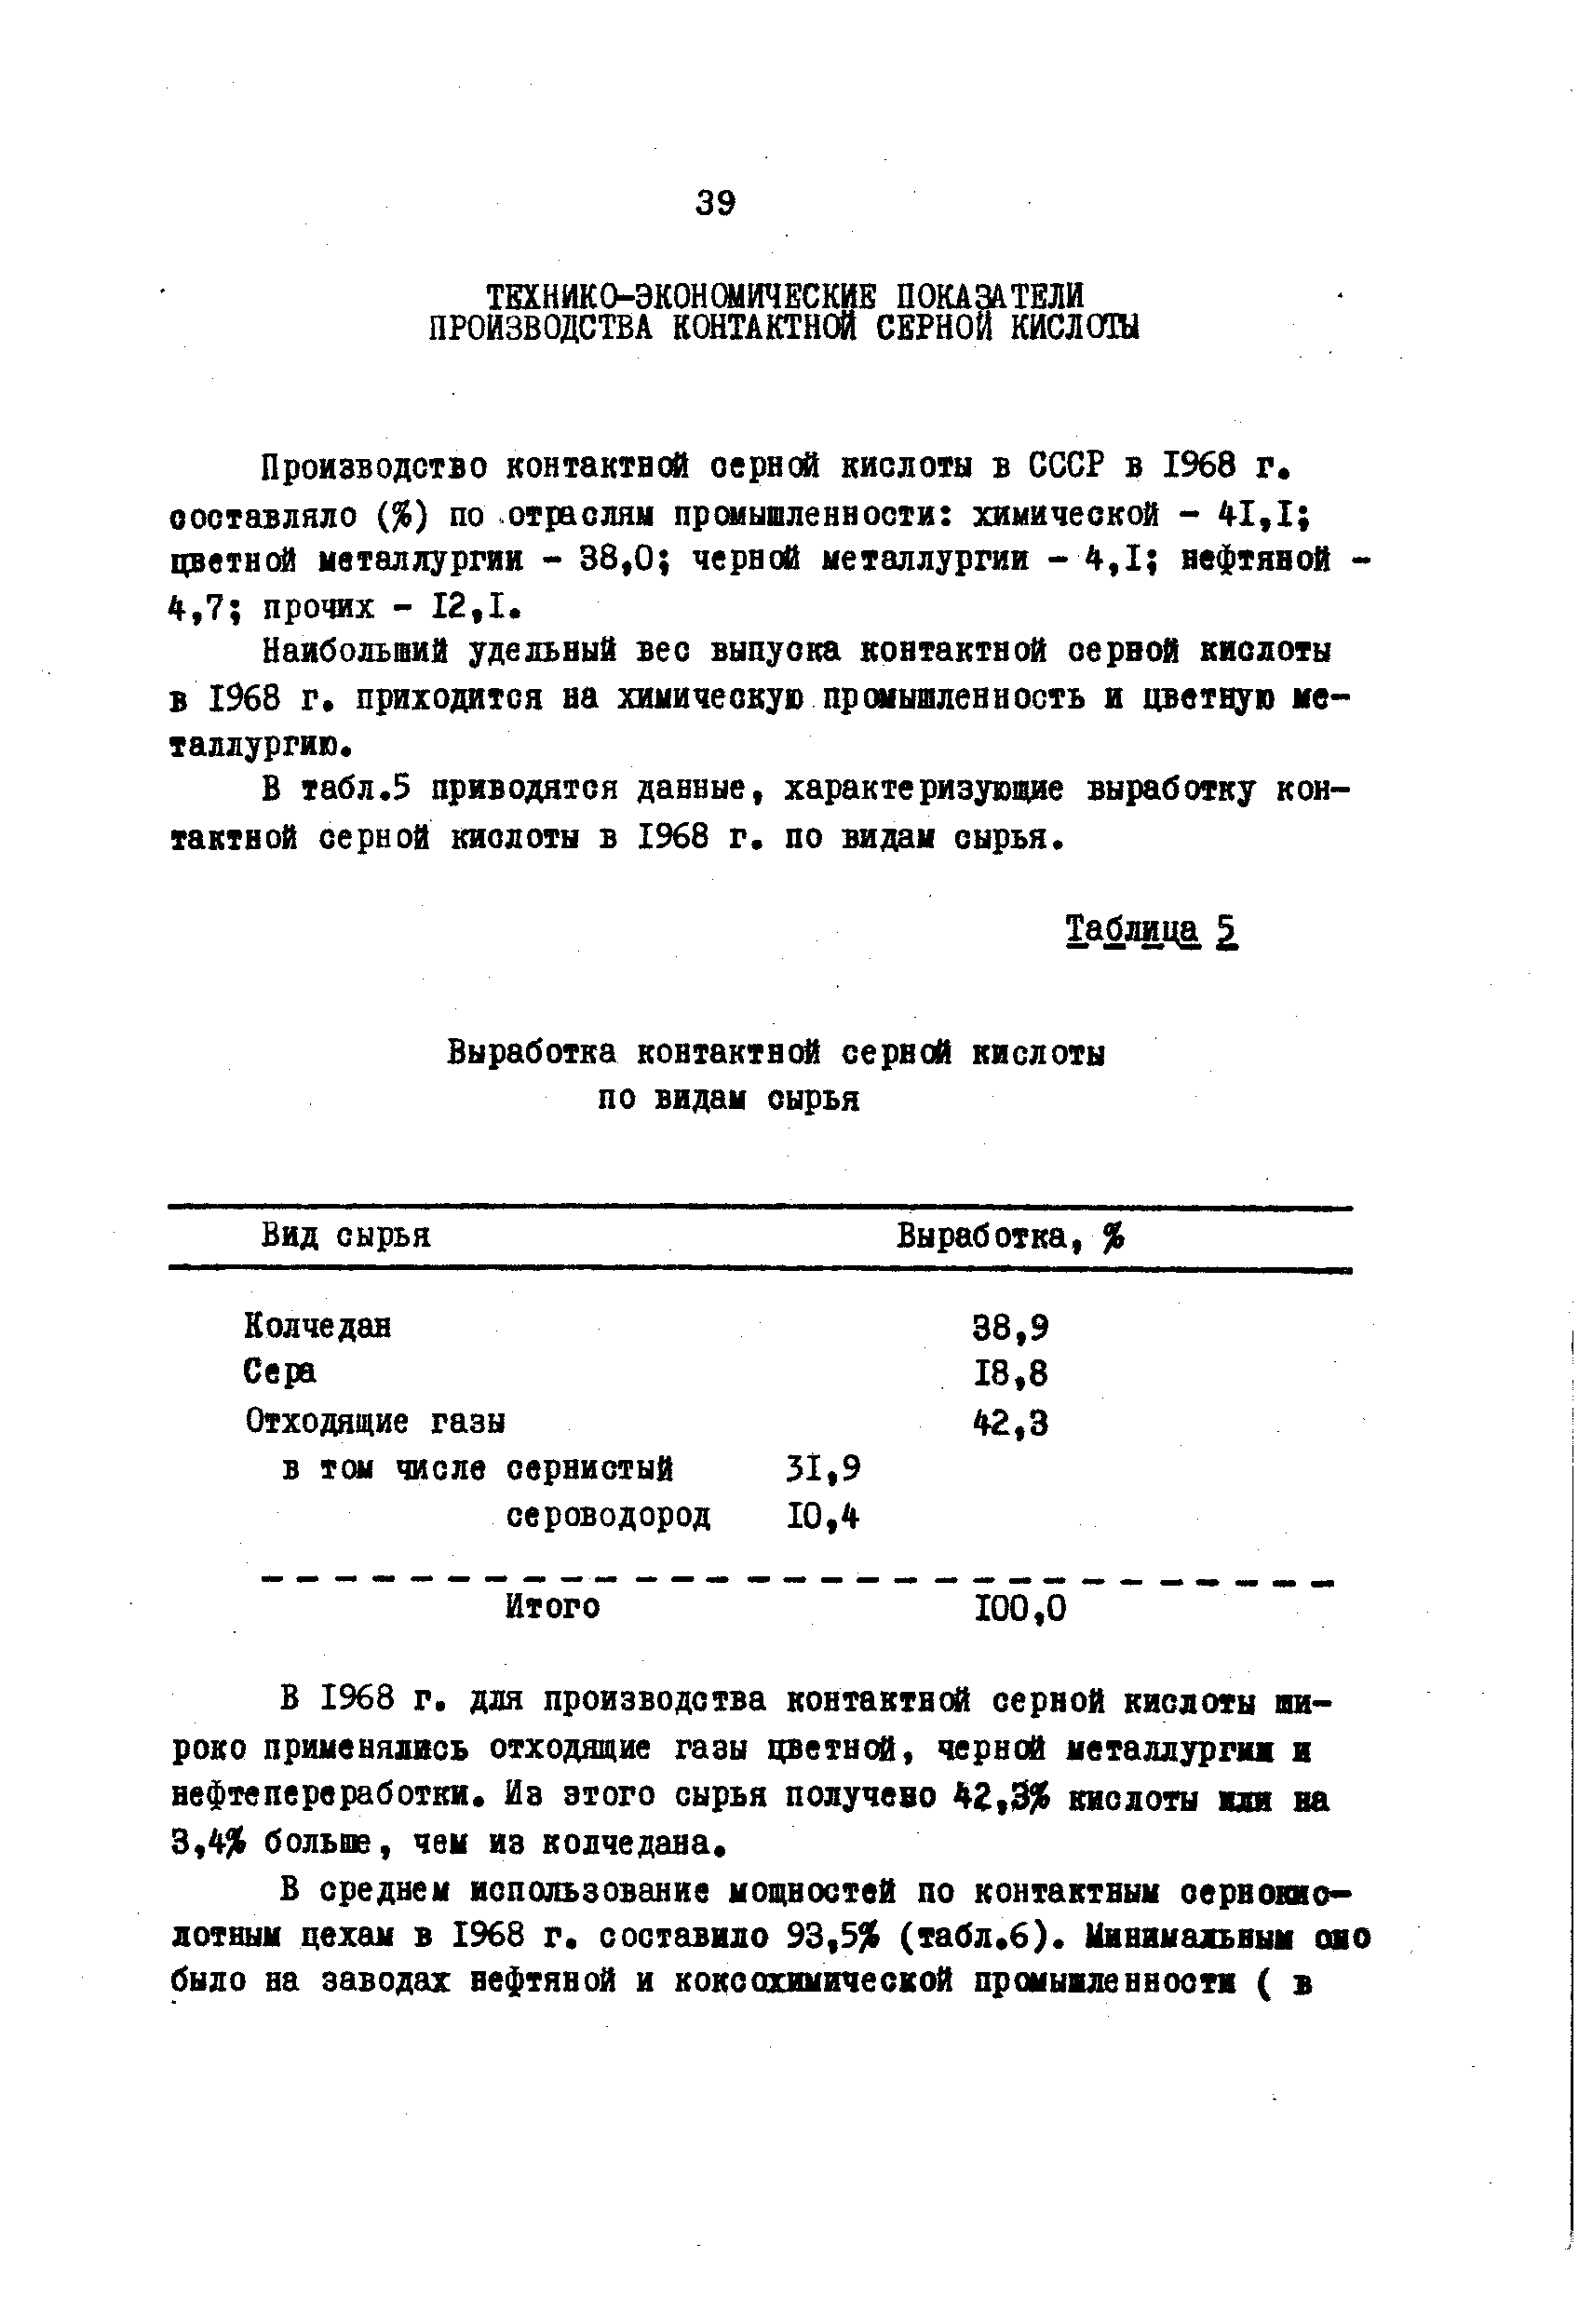 Производство контактной оерной кислоты в СССР в 1%8 г. составляло ( 6) по. отраслям промышленности химической - 41,1 цввтнй металлургии - 38,0 черной металлургии - Л,1 нефтяной -4,7 прочих - 12,1.